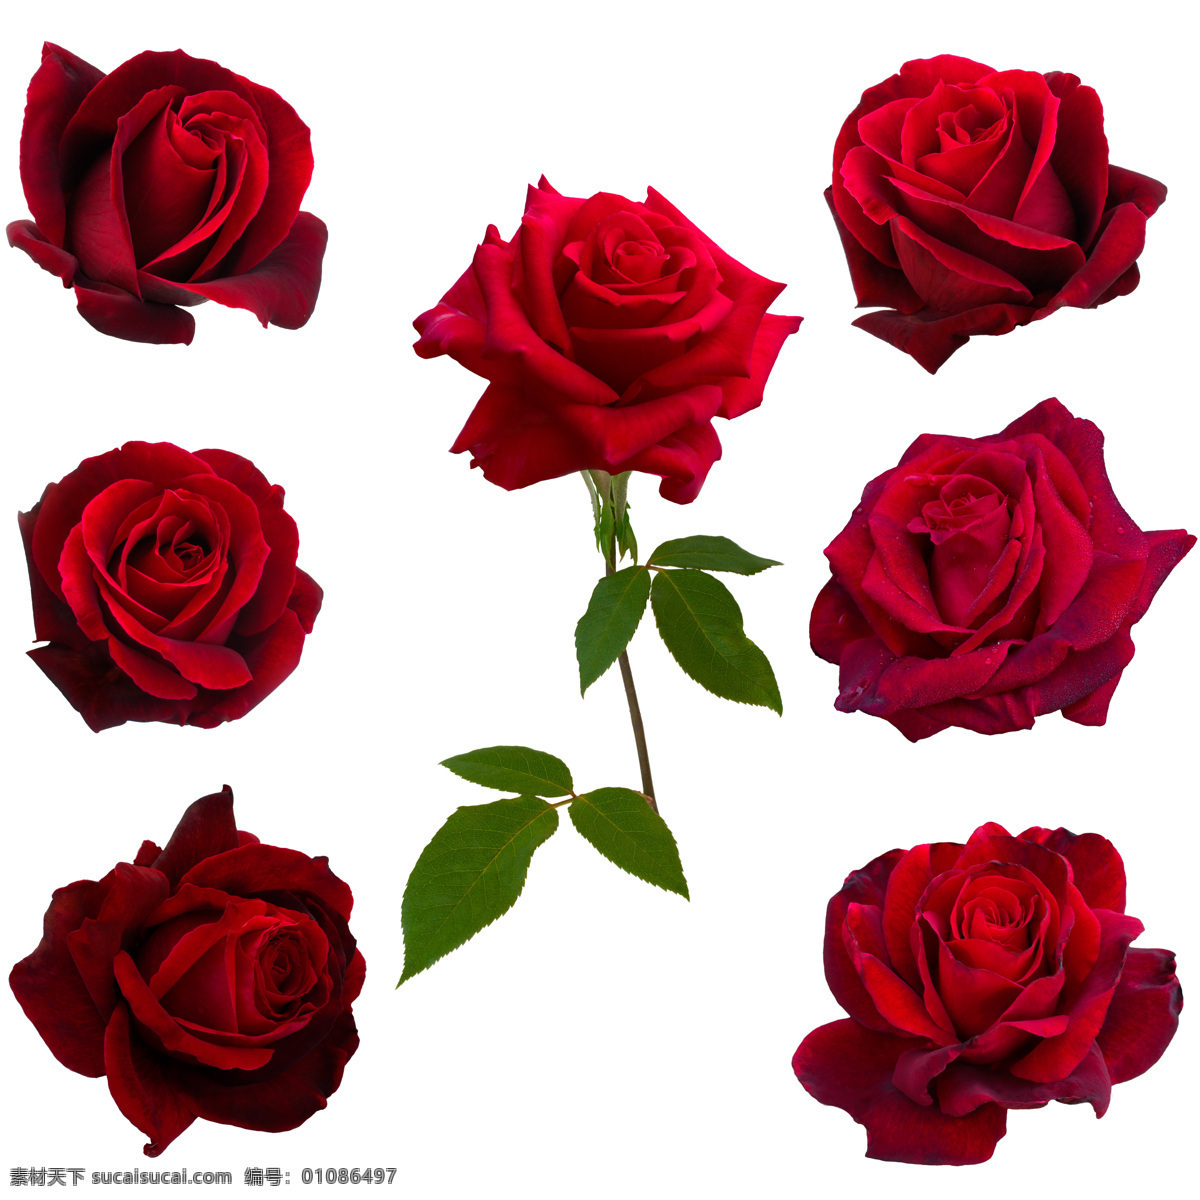 红色玫瑰花 玫瑰花图片 一束玫瑰花 玫瑰花素材 高清玫瑰花 餐饮美食 传统美食